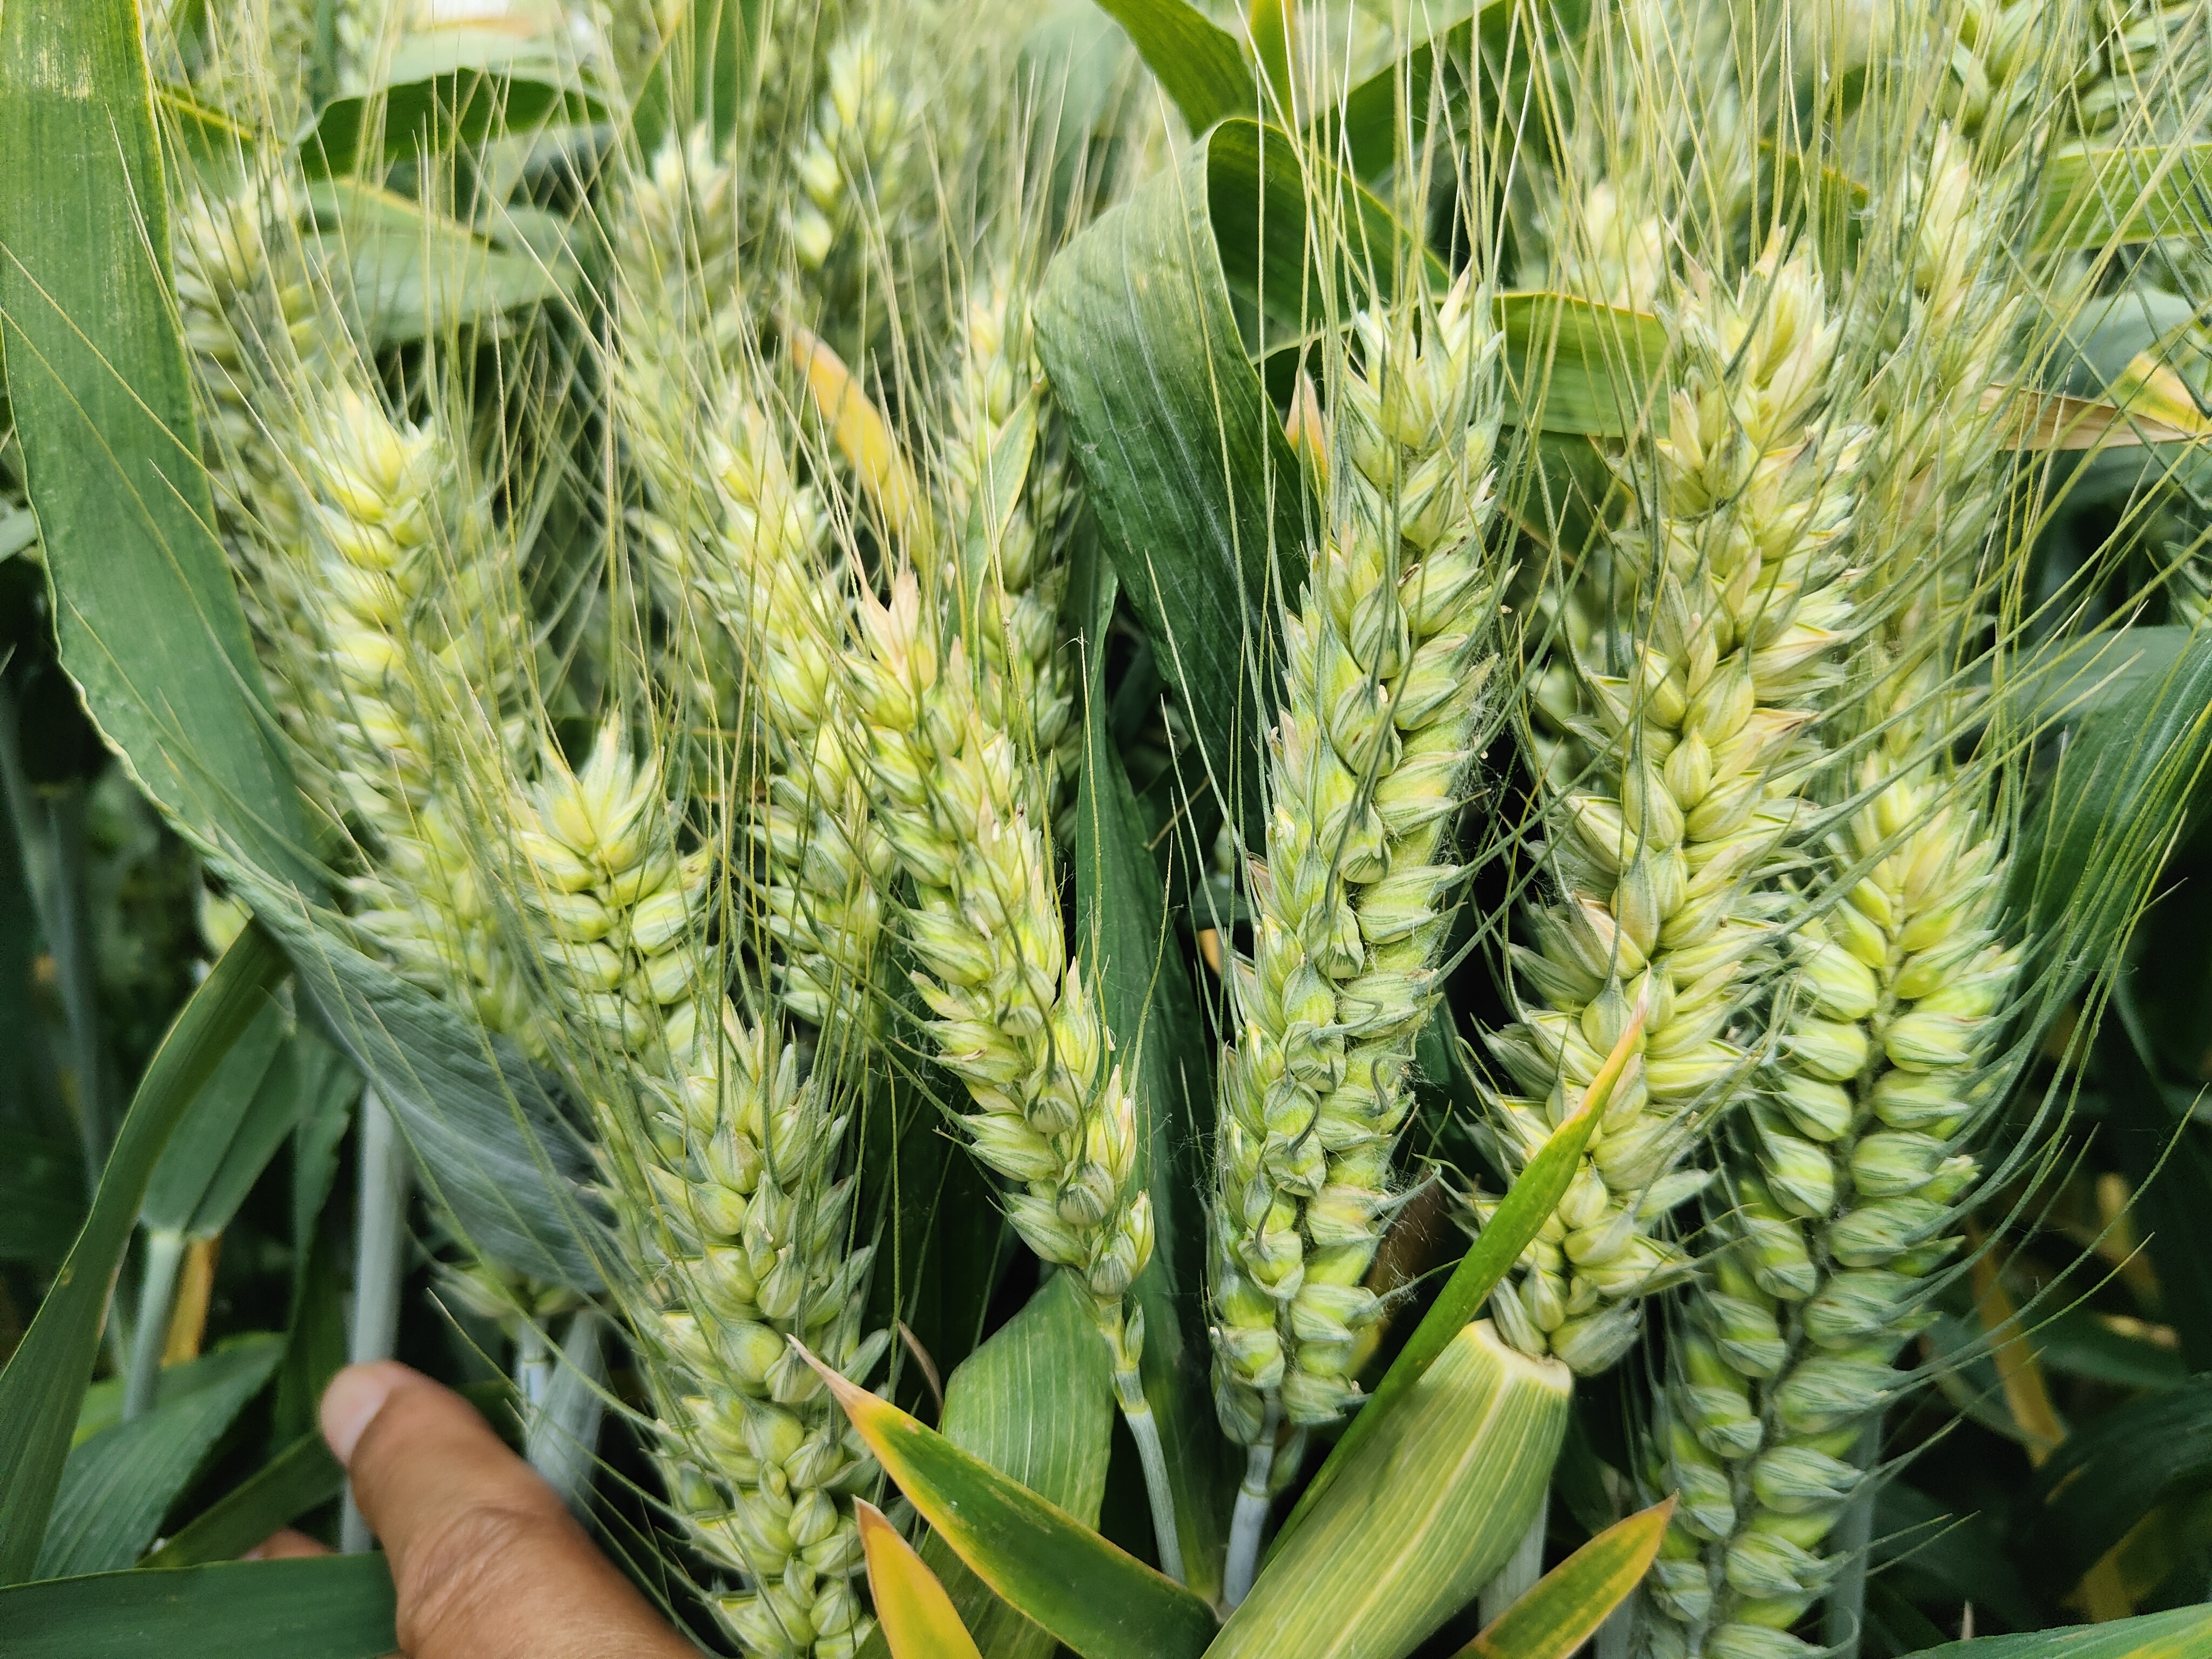 周麦系列小麦品种,这几个品种种植面积大产量高,今年首选